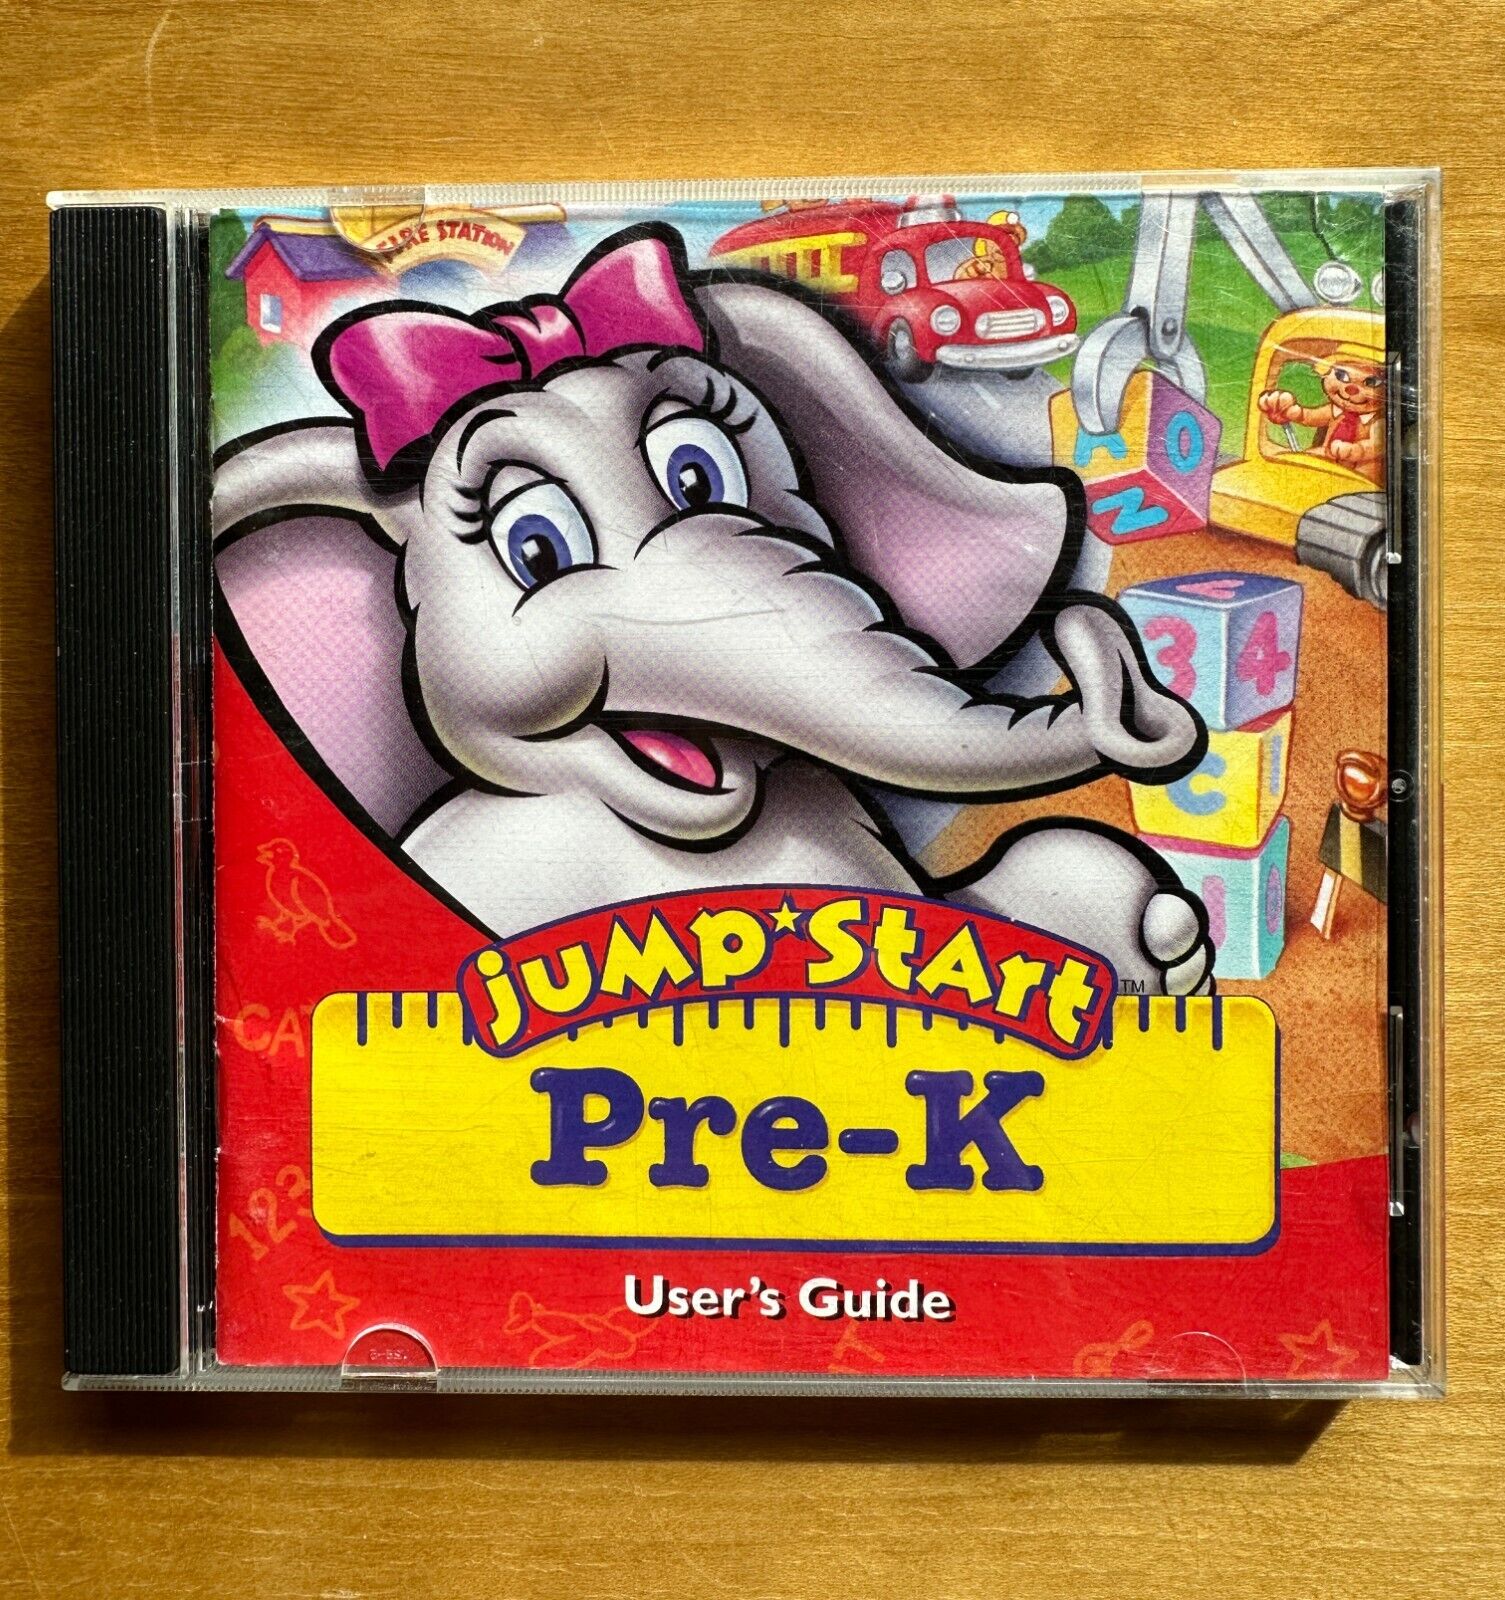 Jump Start Pre-K User's Guide CD-Rom 1996 for Ages 3-5